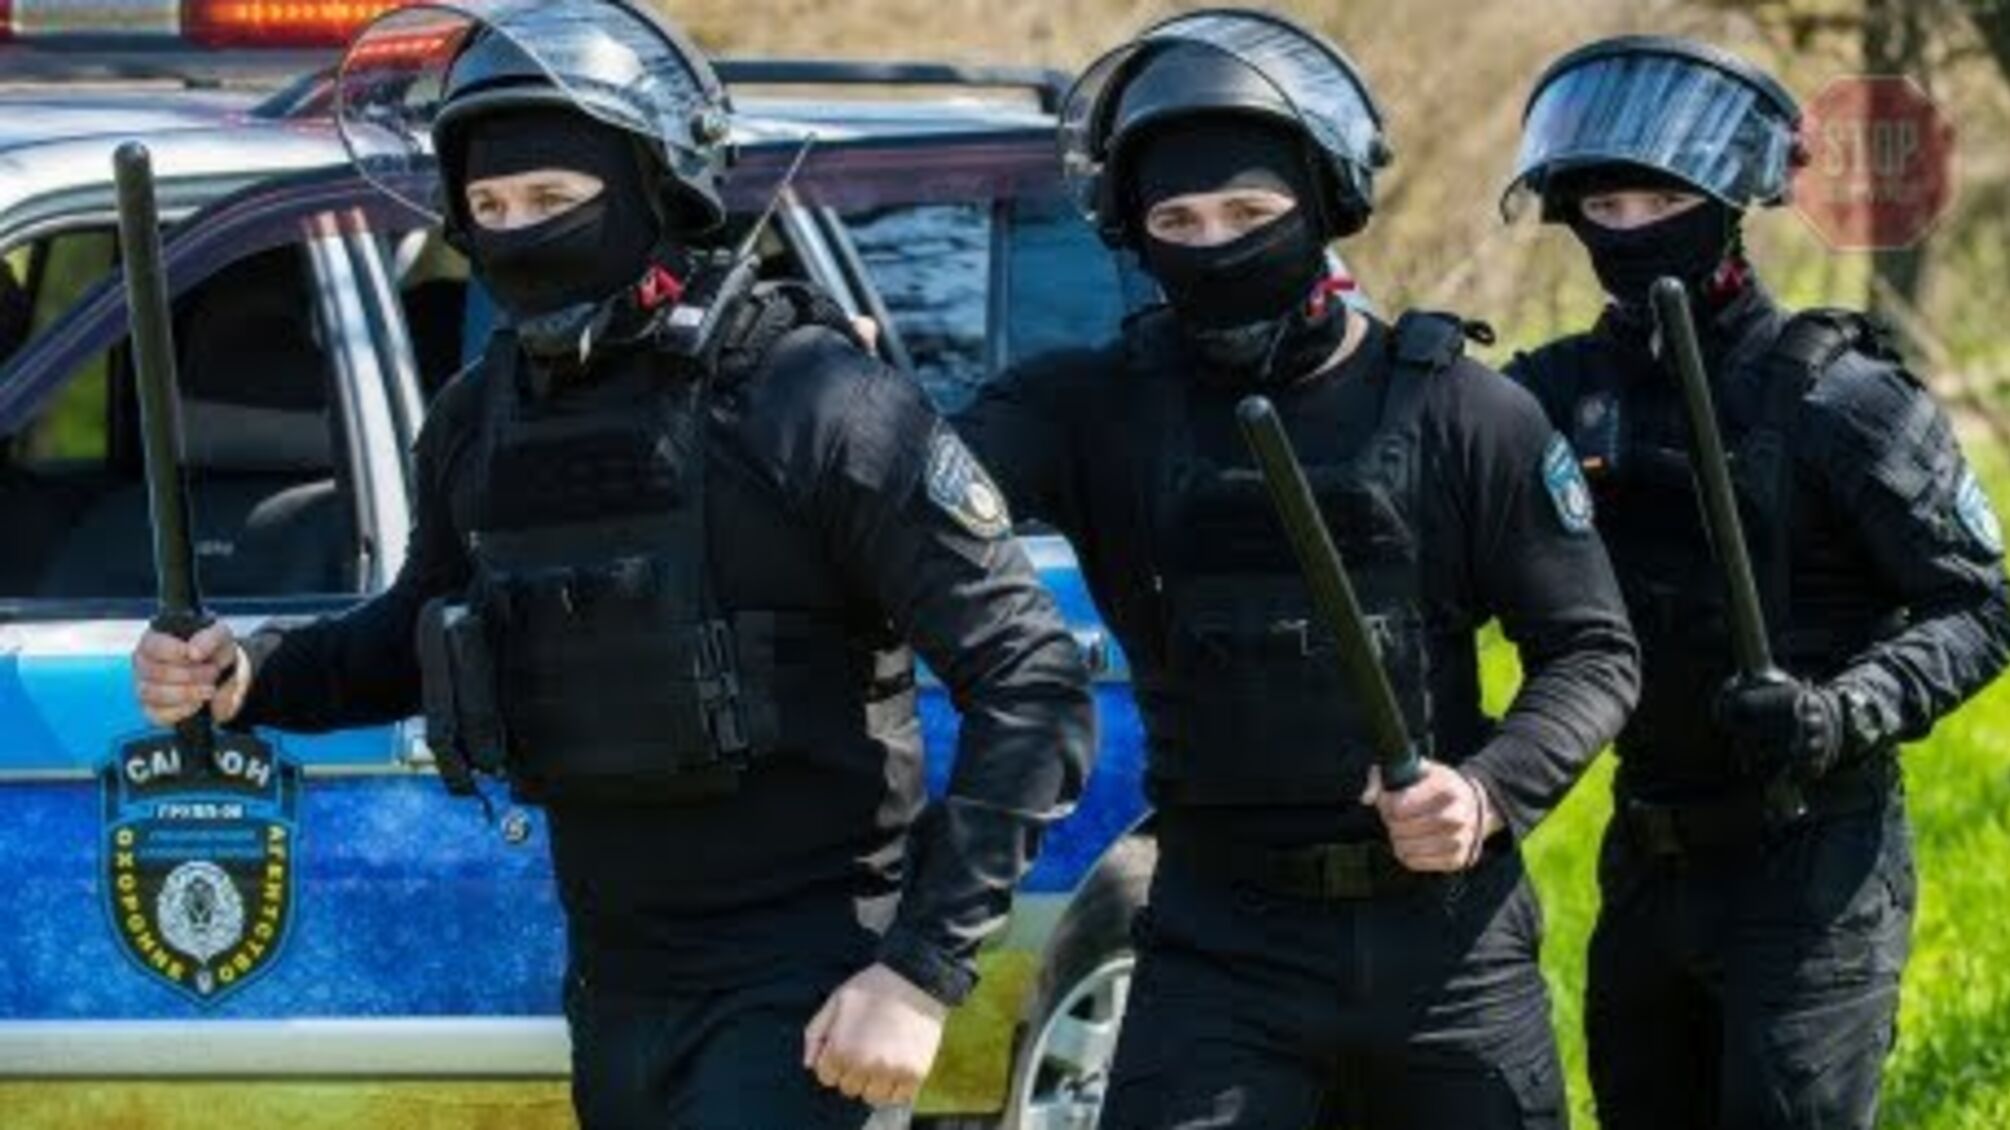 Одеські правоохоронці «кришують» фірму ексберкутівця, яка займається розбоєм